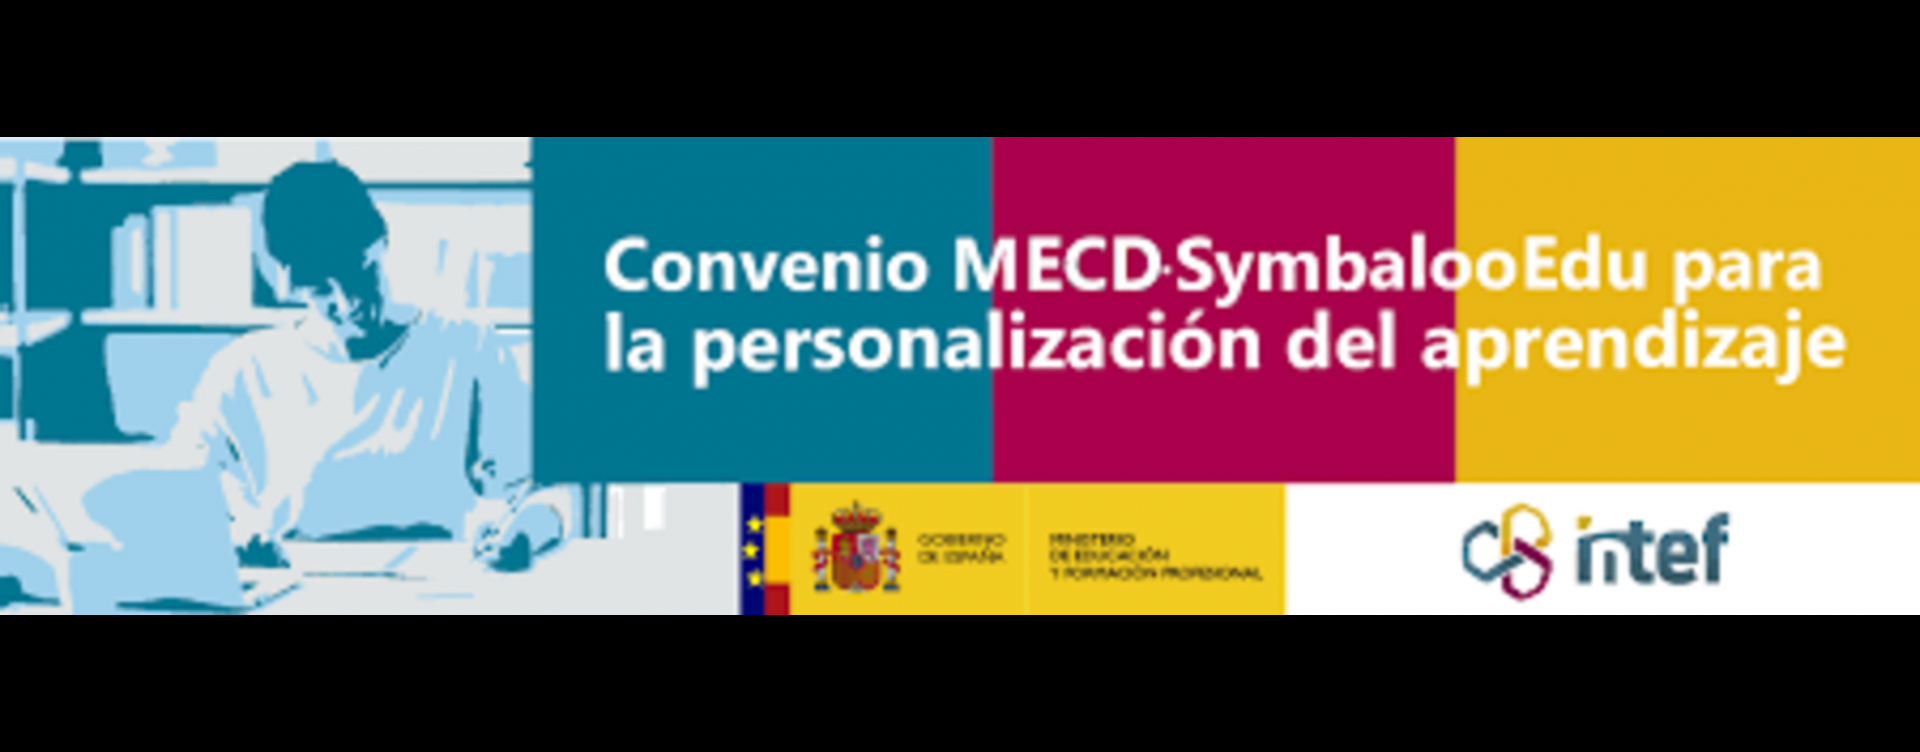 Convenio MECD-Symbaloo para la personalización del aprendizaje